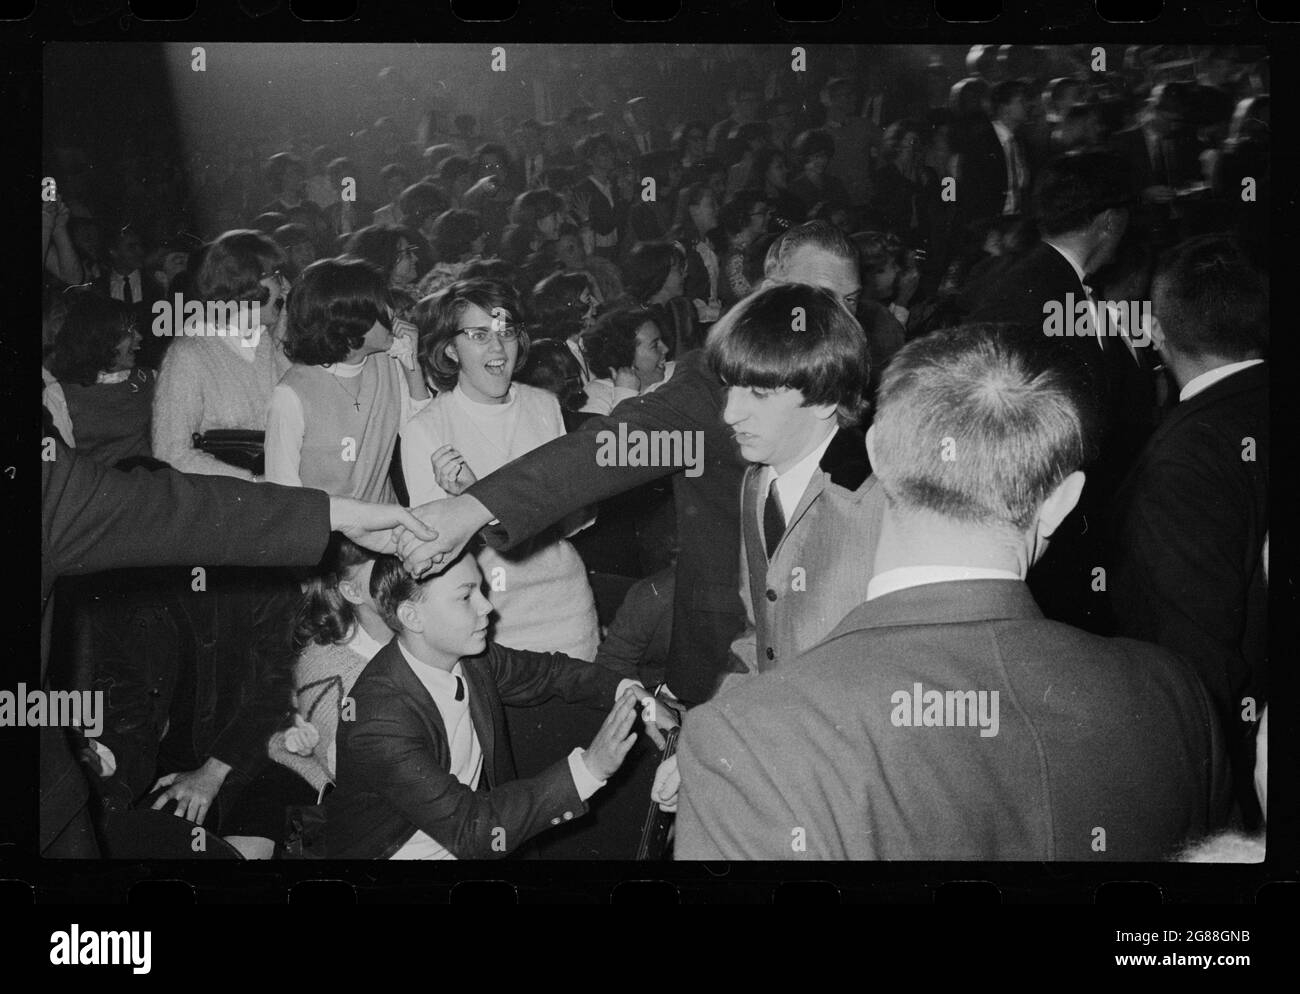 Beatles fans au Washington Coliseum, le 11 février 1964. Crier les fans dans le public. Ringo Starr à pied. Trikosko, Marion S., photographe. Banque D'Images